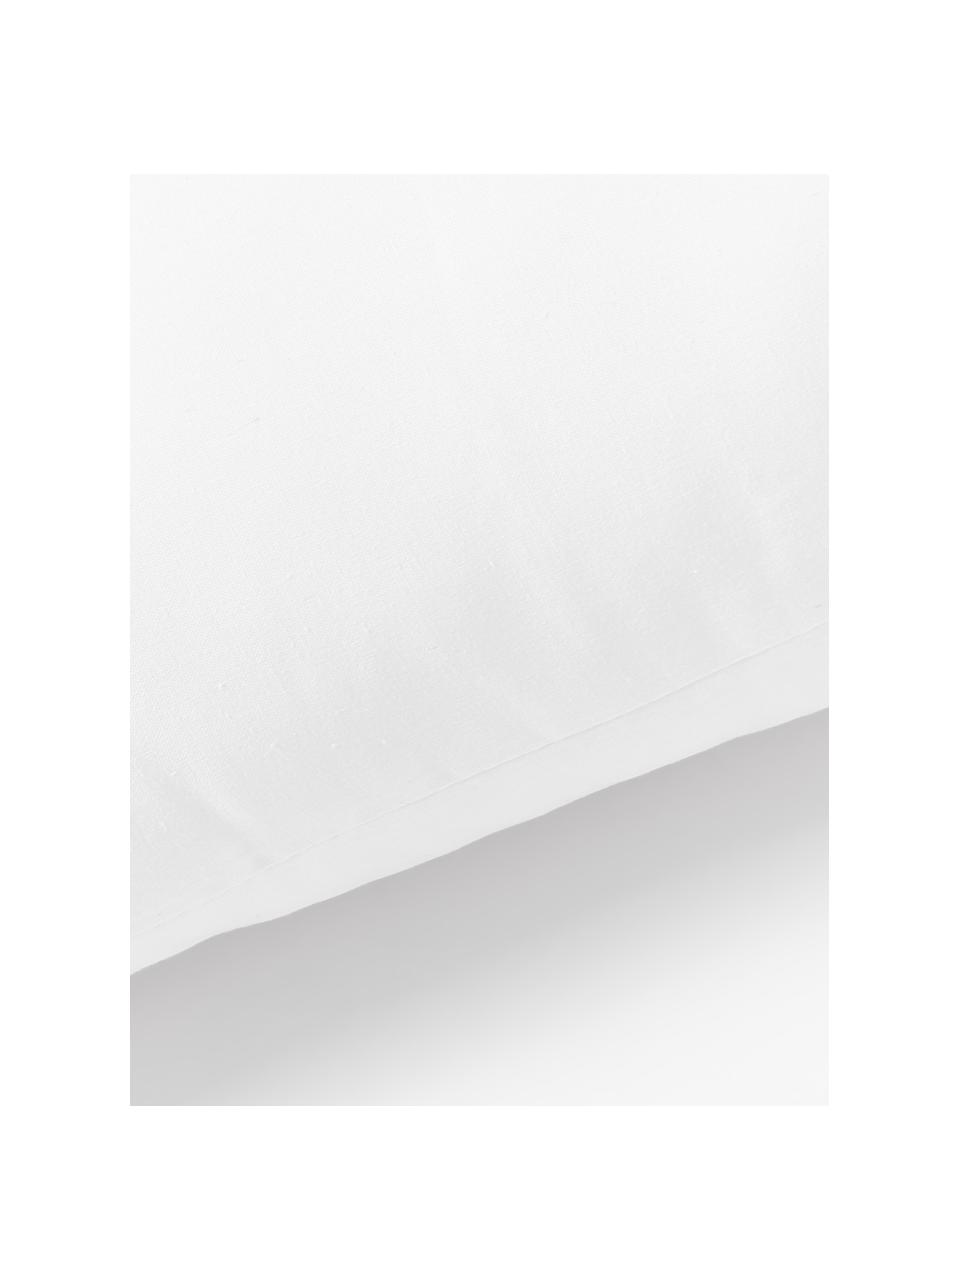 Wkład do poduszki z mikrofibry Sia, 30x70, Biały, S 30 x D 70 cm